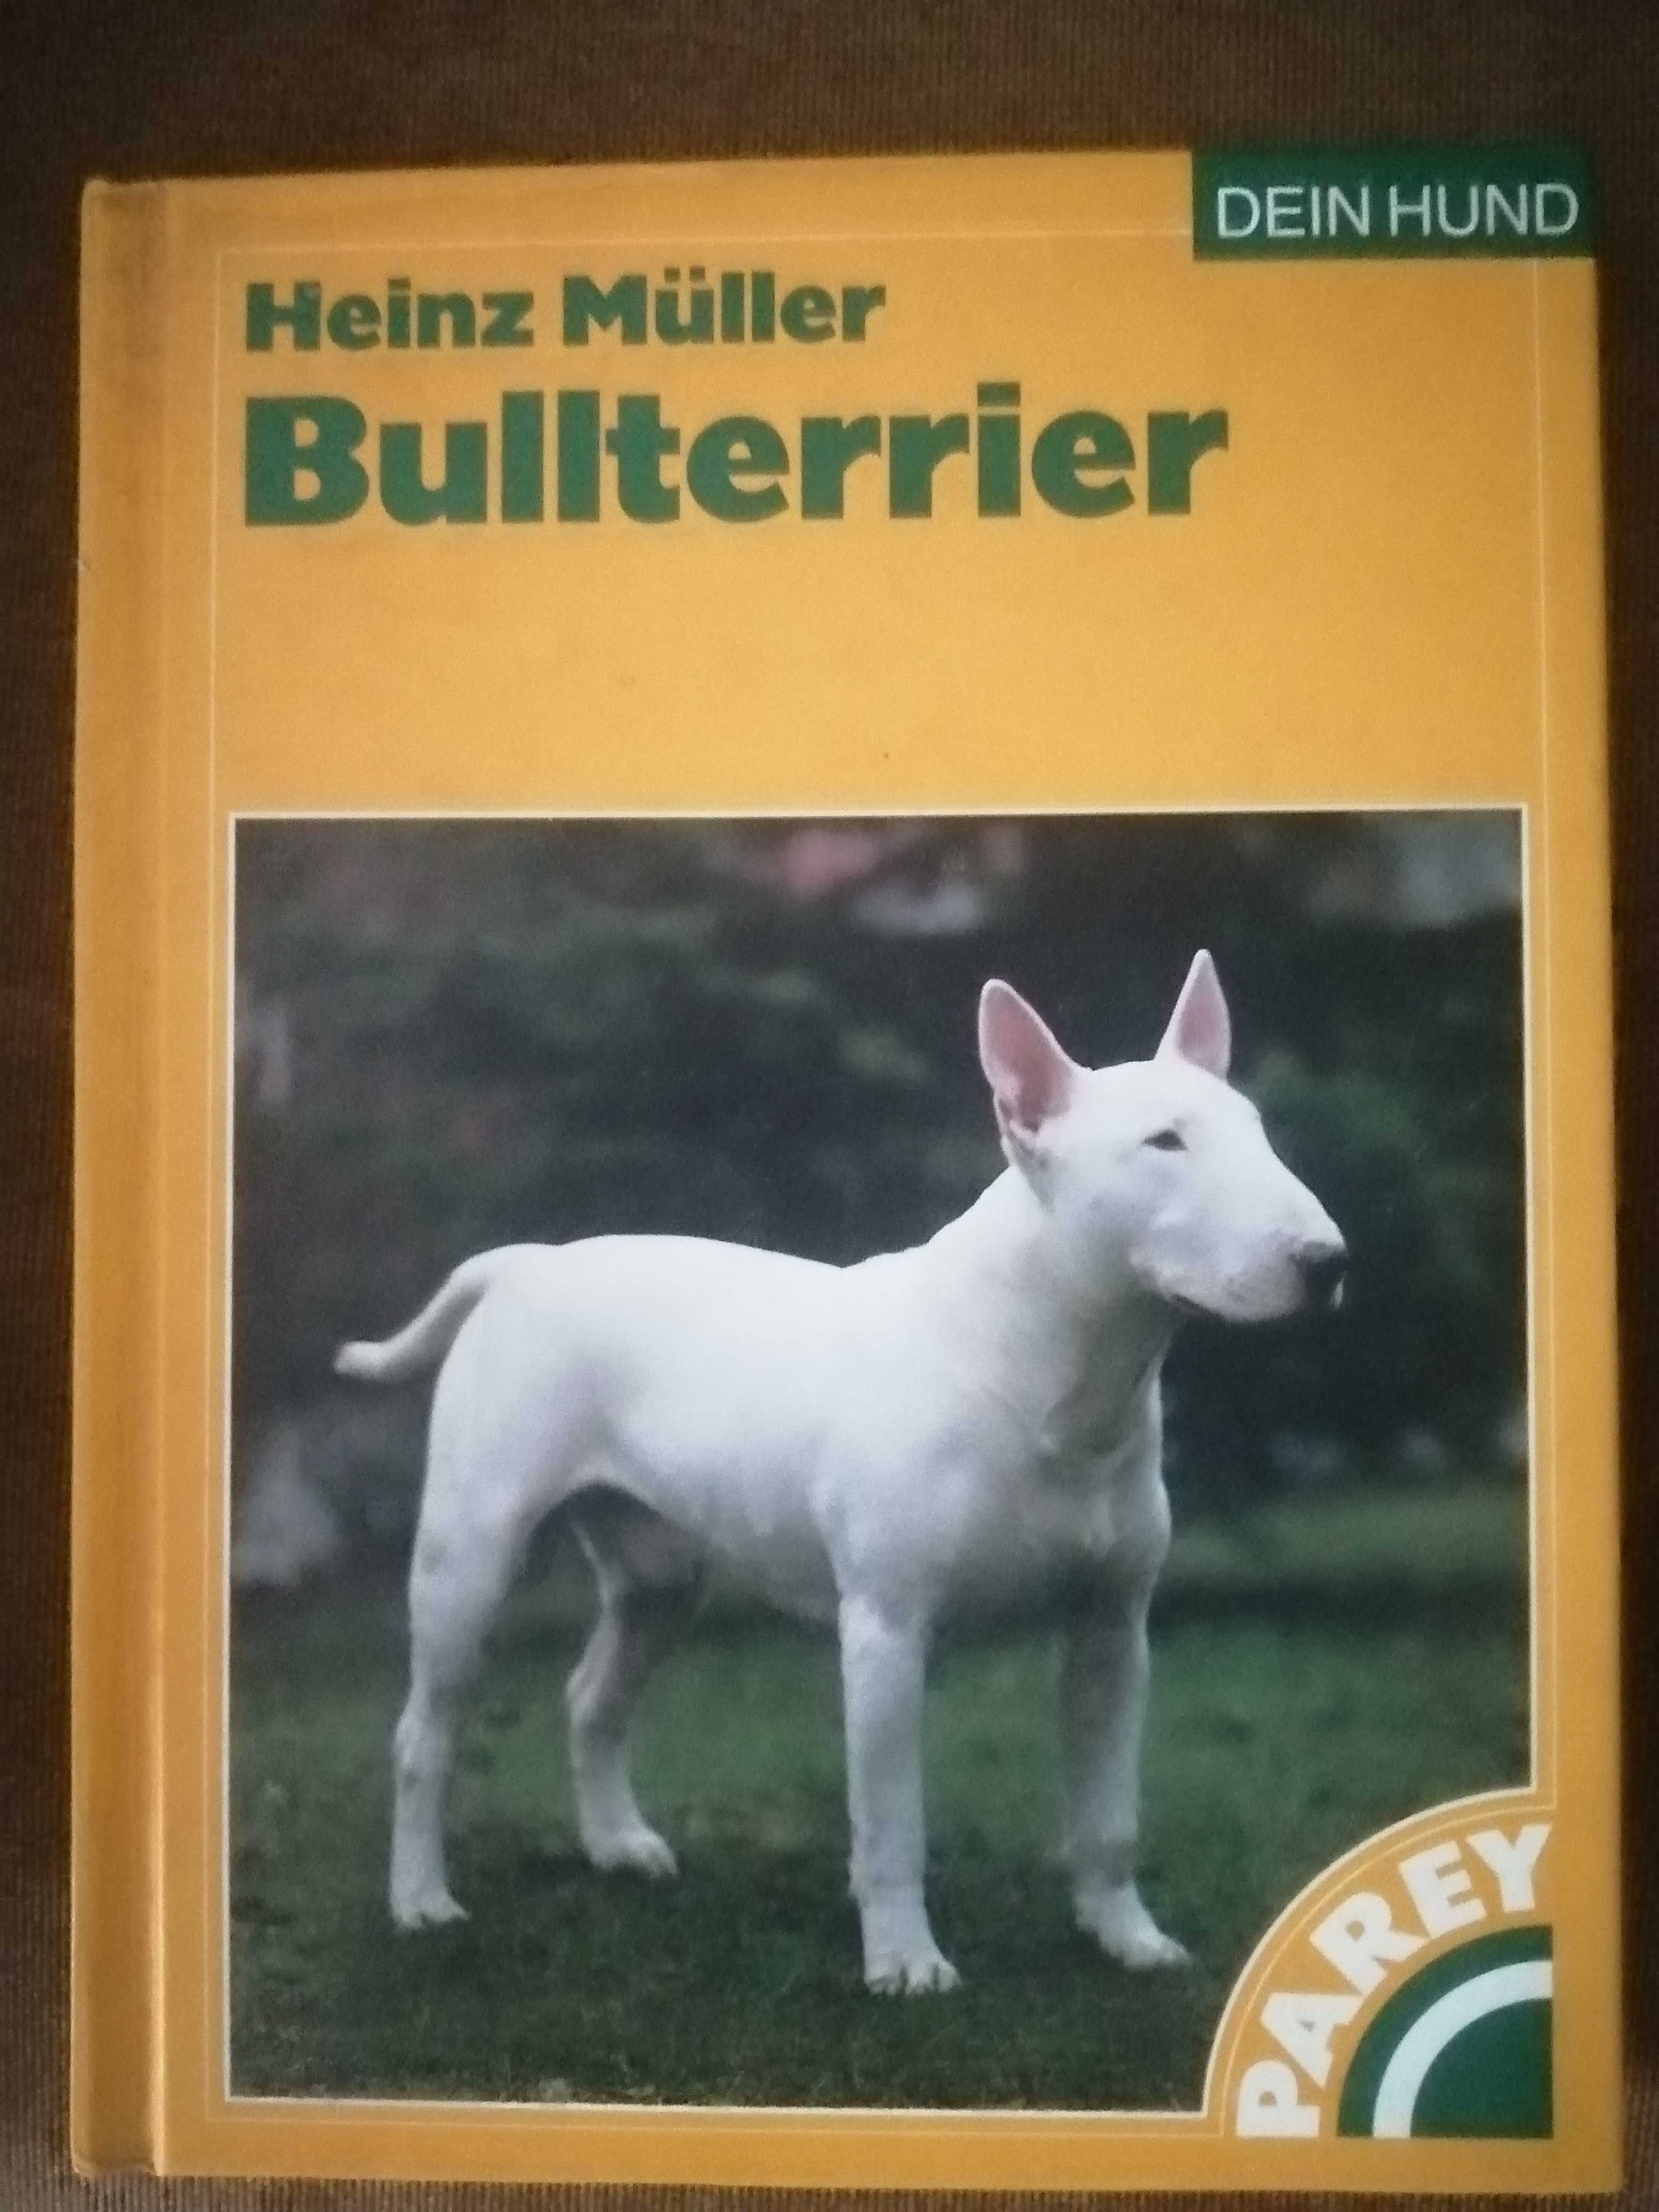 Bullterier Heinz Muller